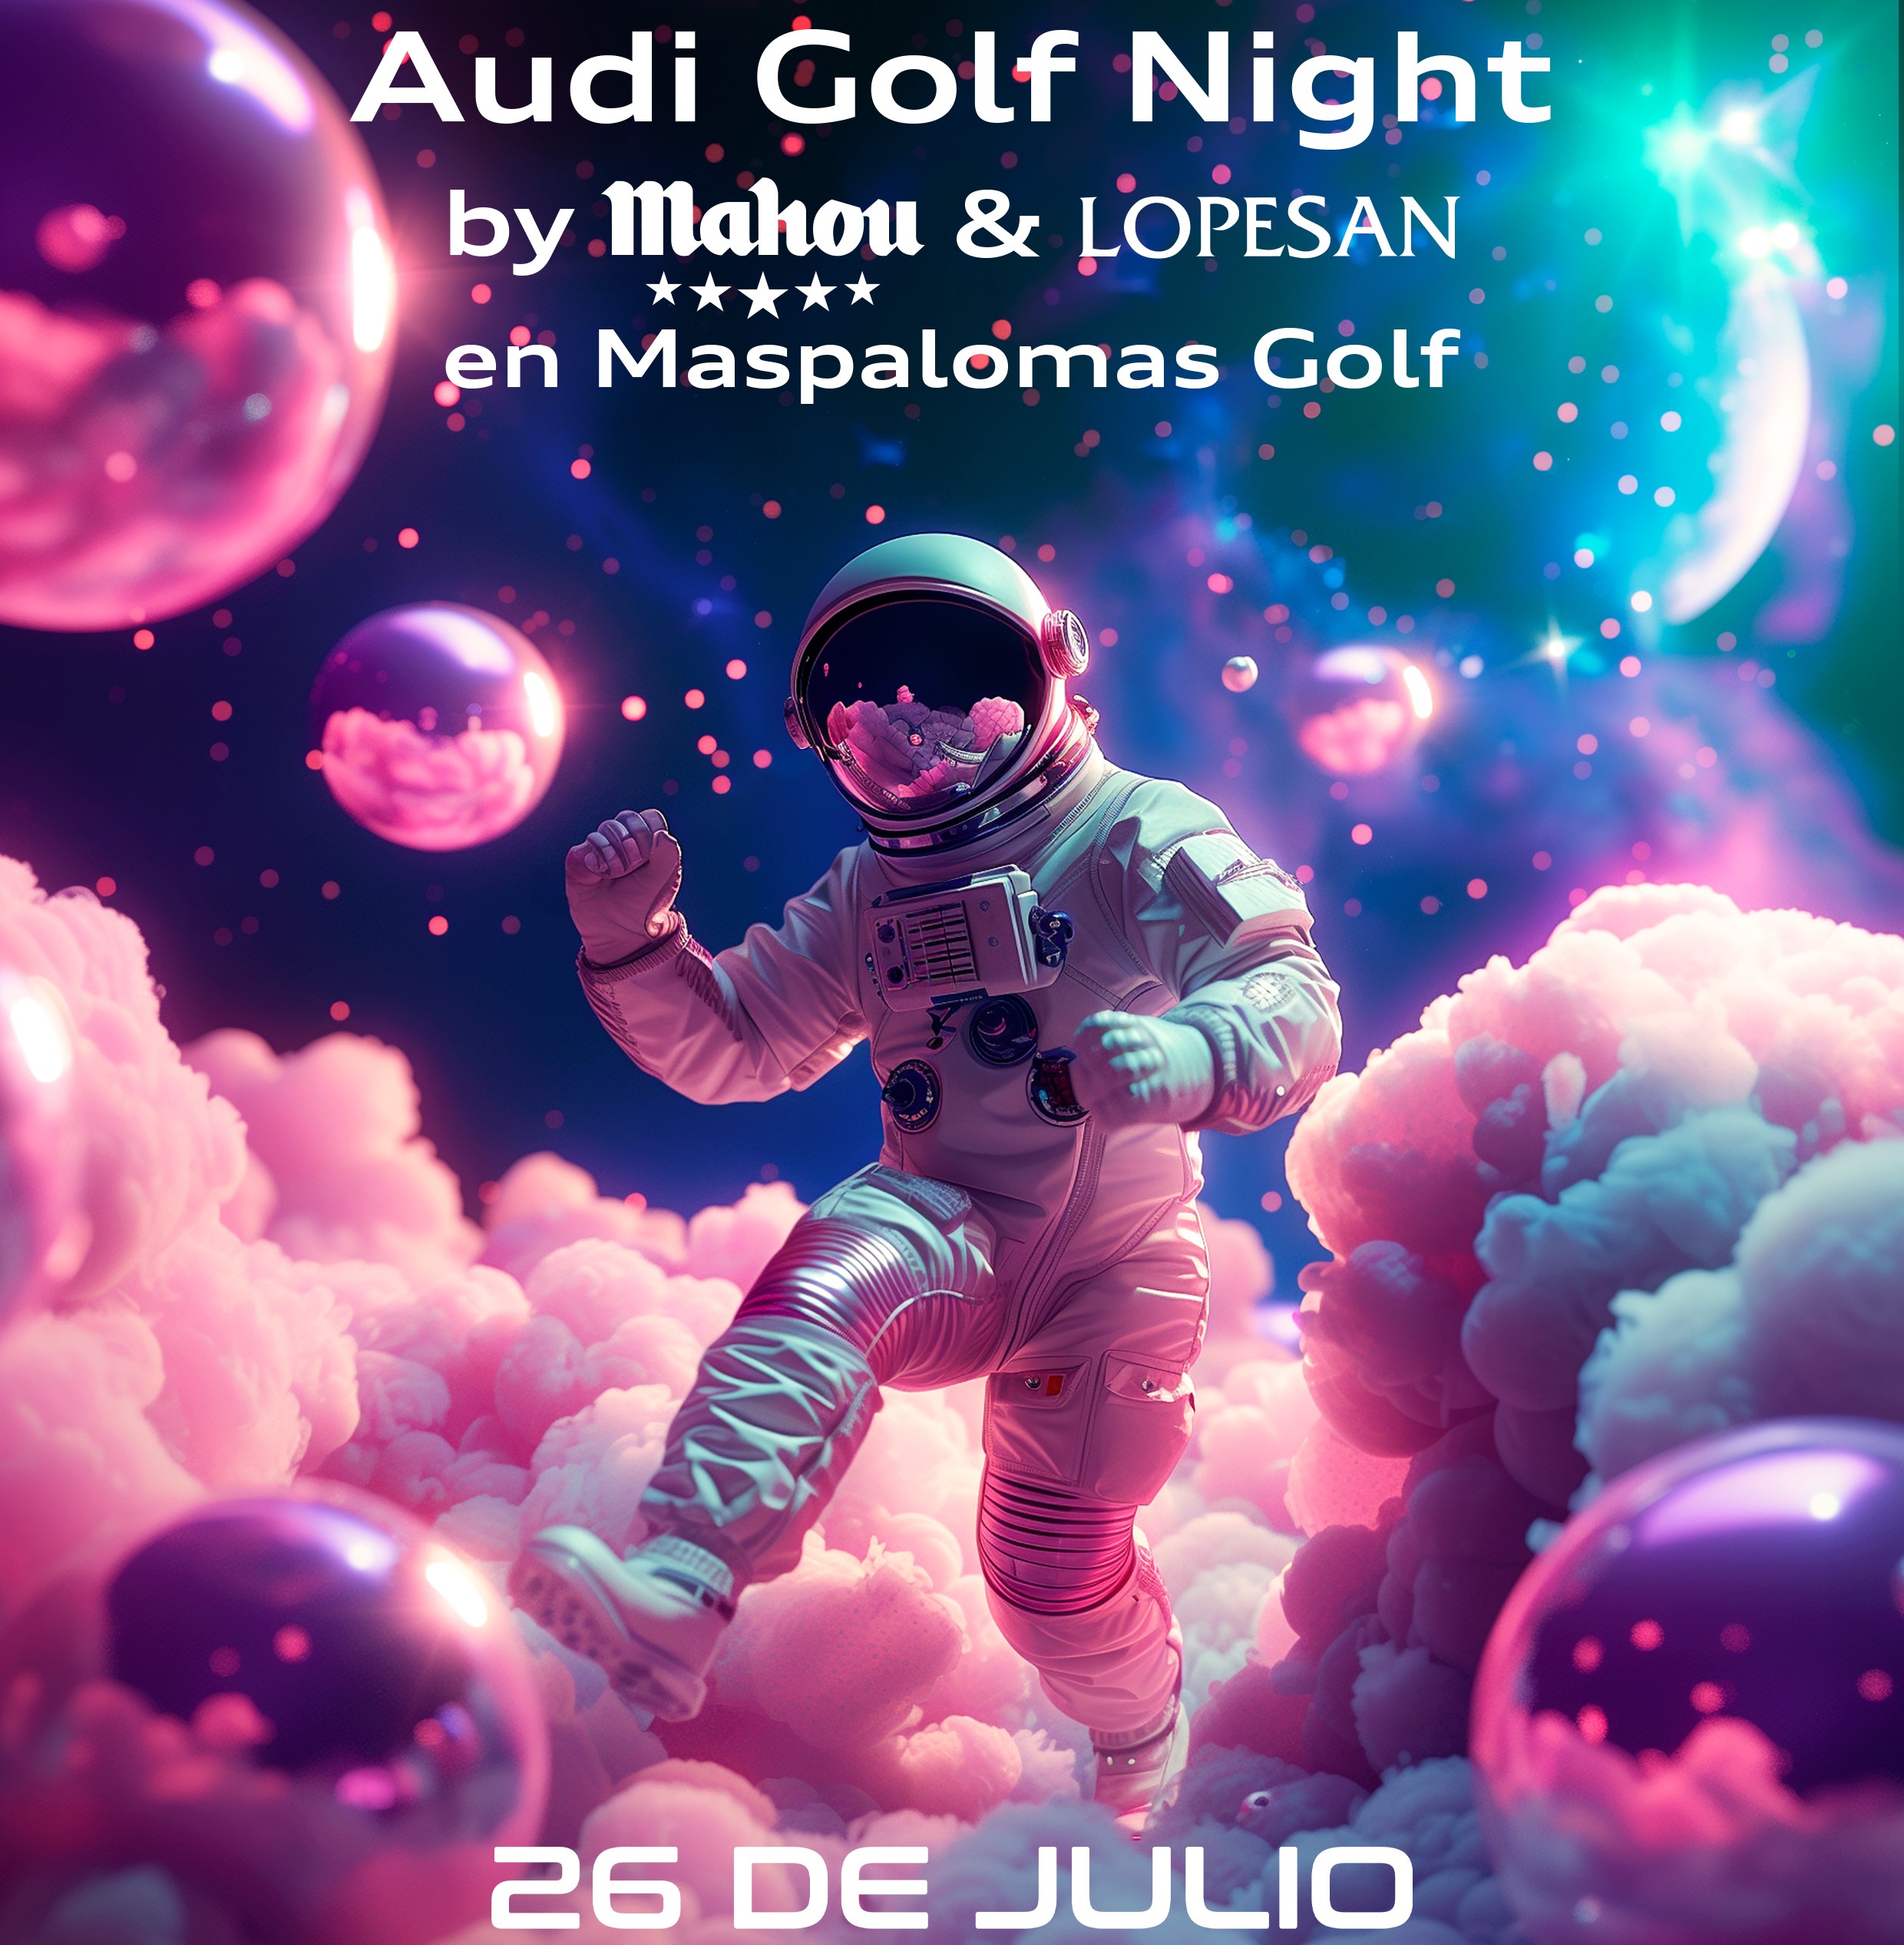 Audi Golf Night by Mahou & Lopesan